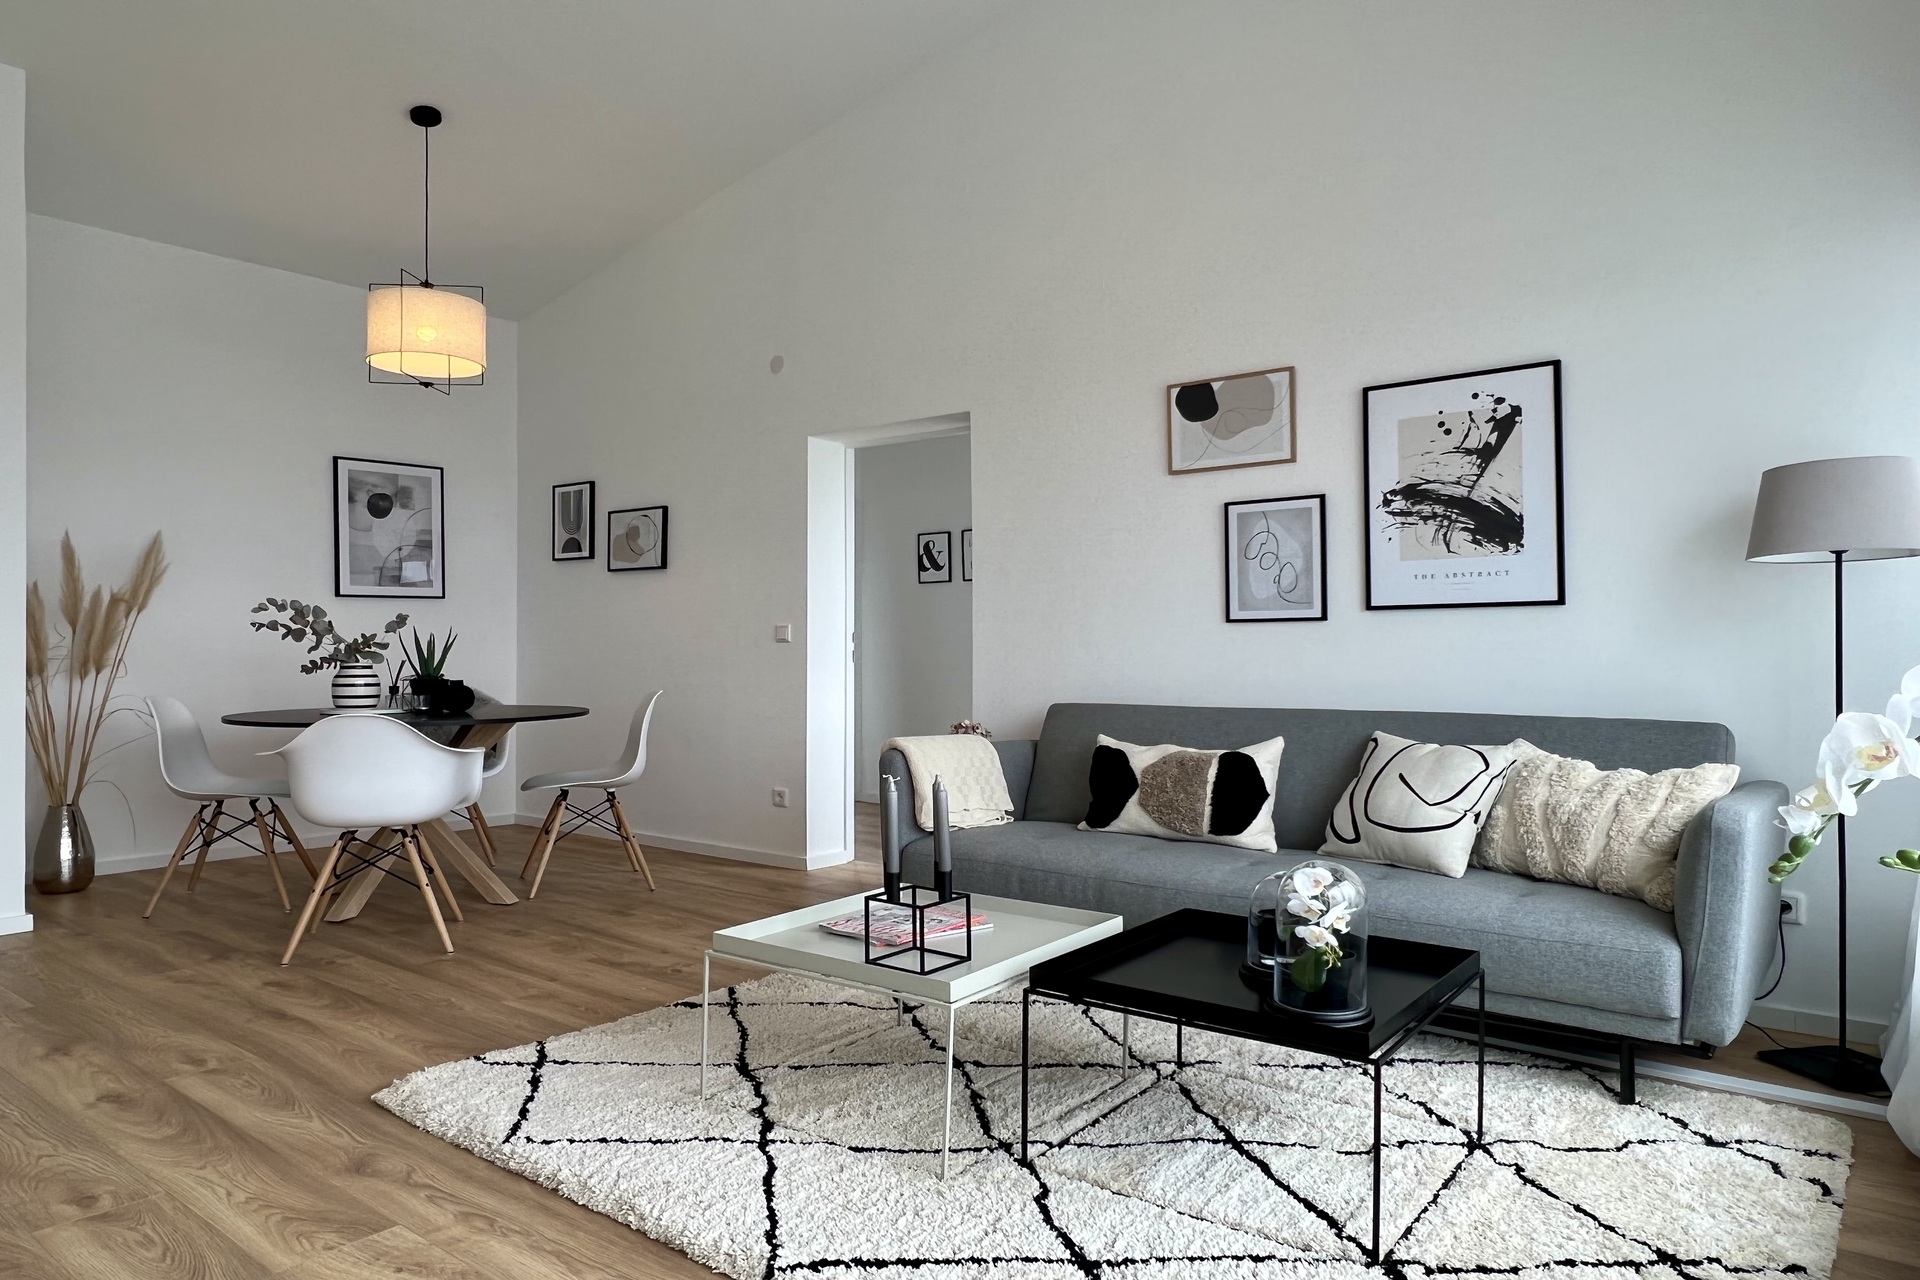 Fix und Flip in Bruchköbel. Home Staging von Anja Krohnen Home Staging